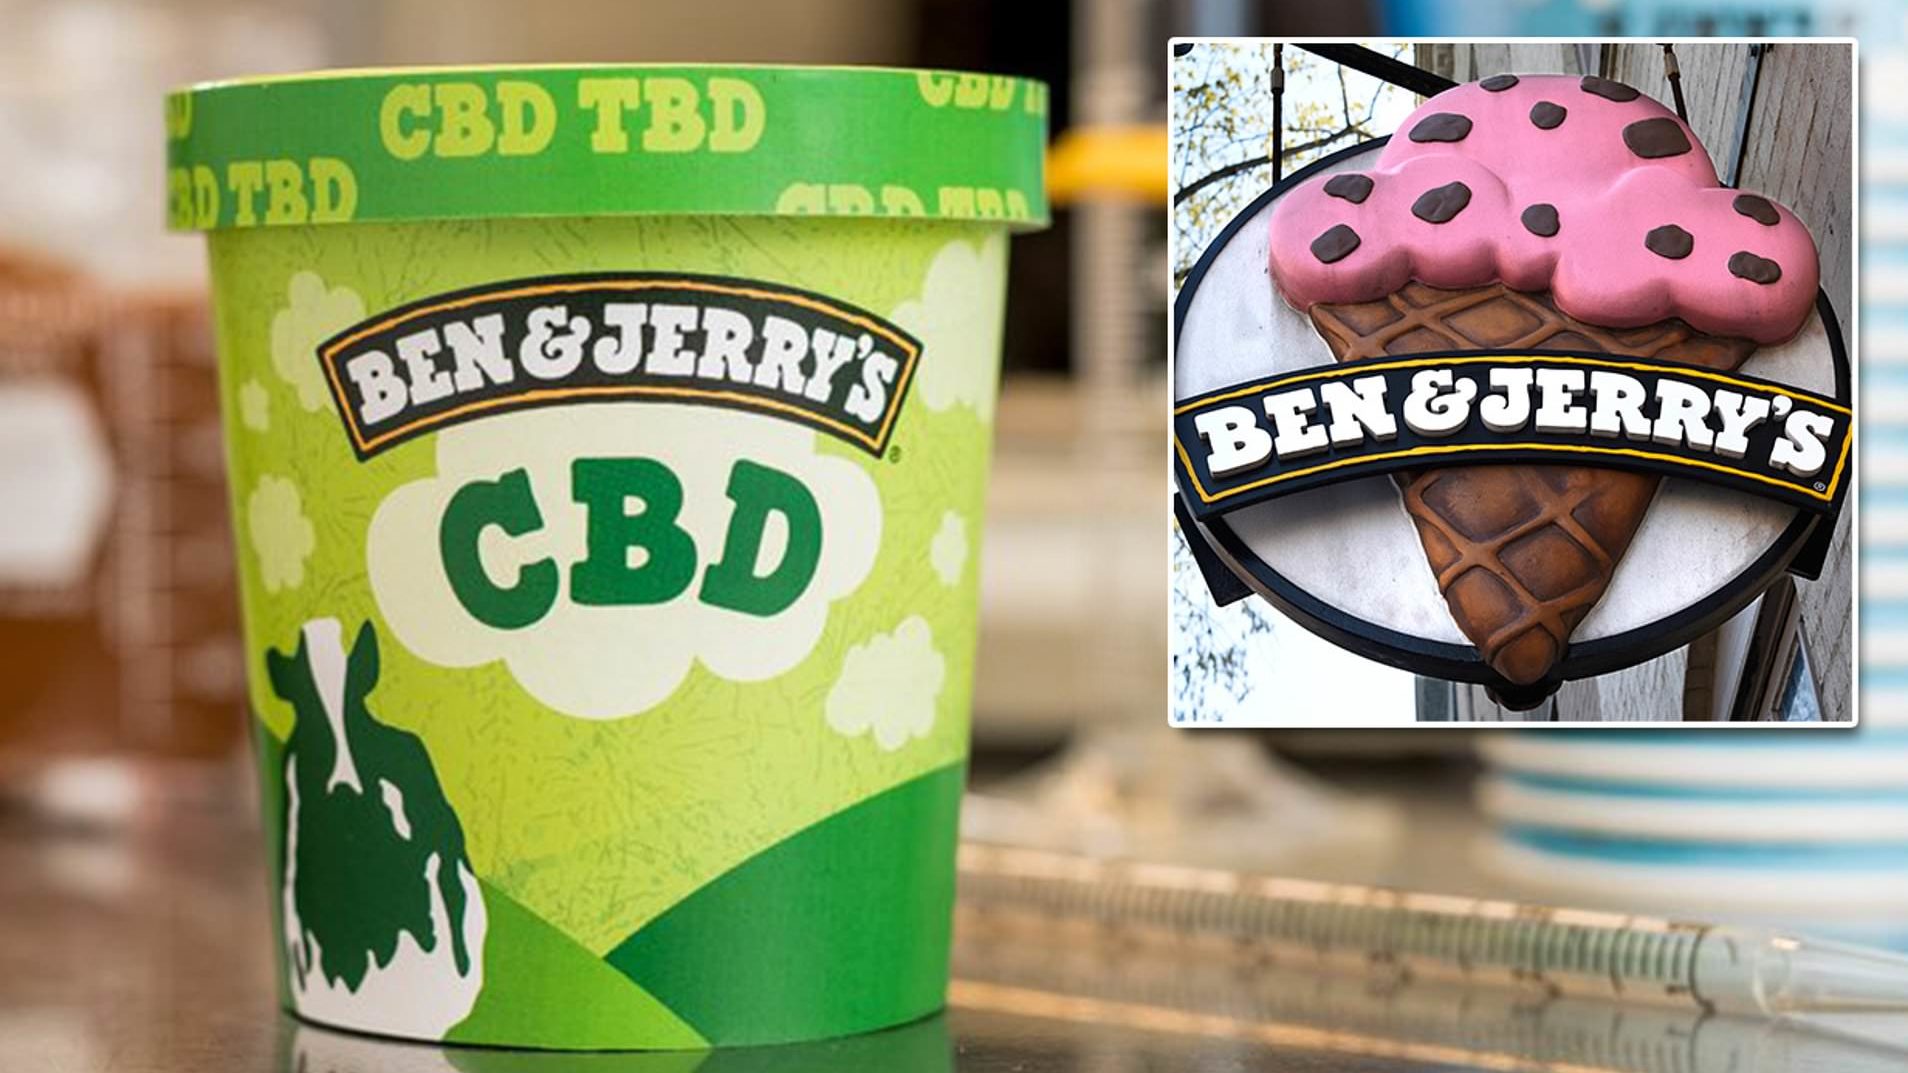 Ben and Jerry cbd cannabis ice cream